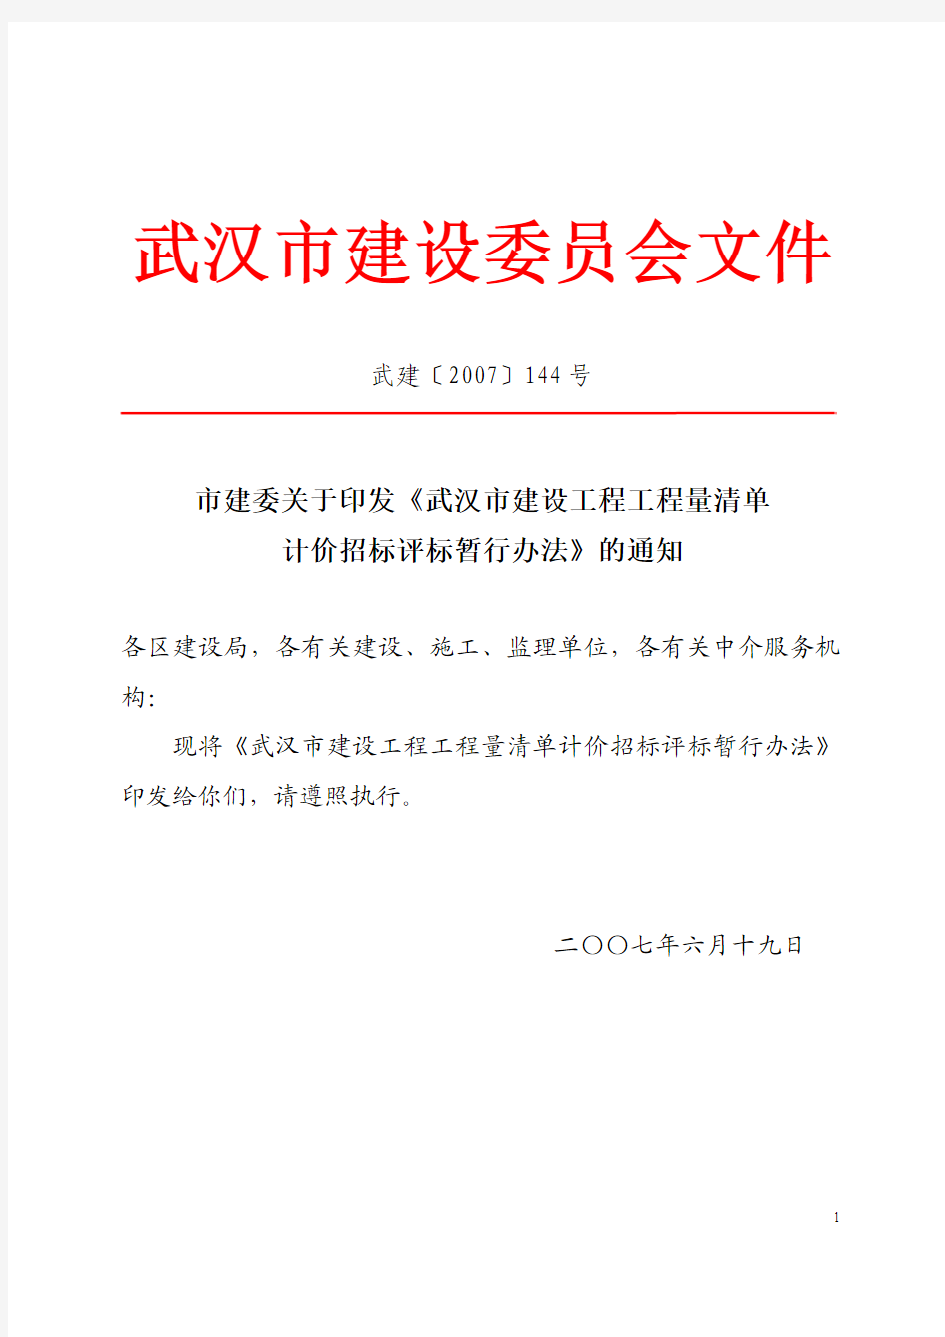 市建委关于印发《武汉市建设工程工程量清单